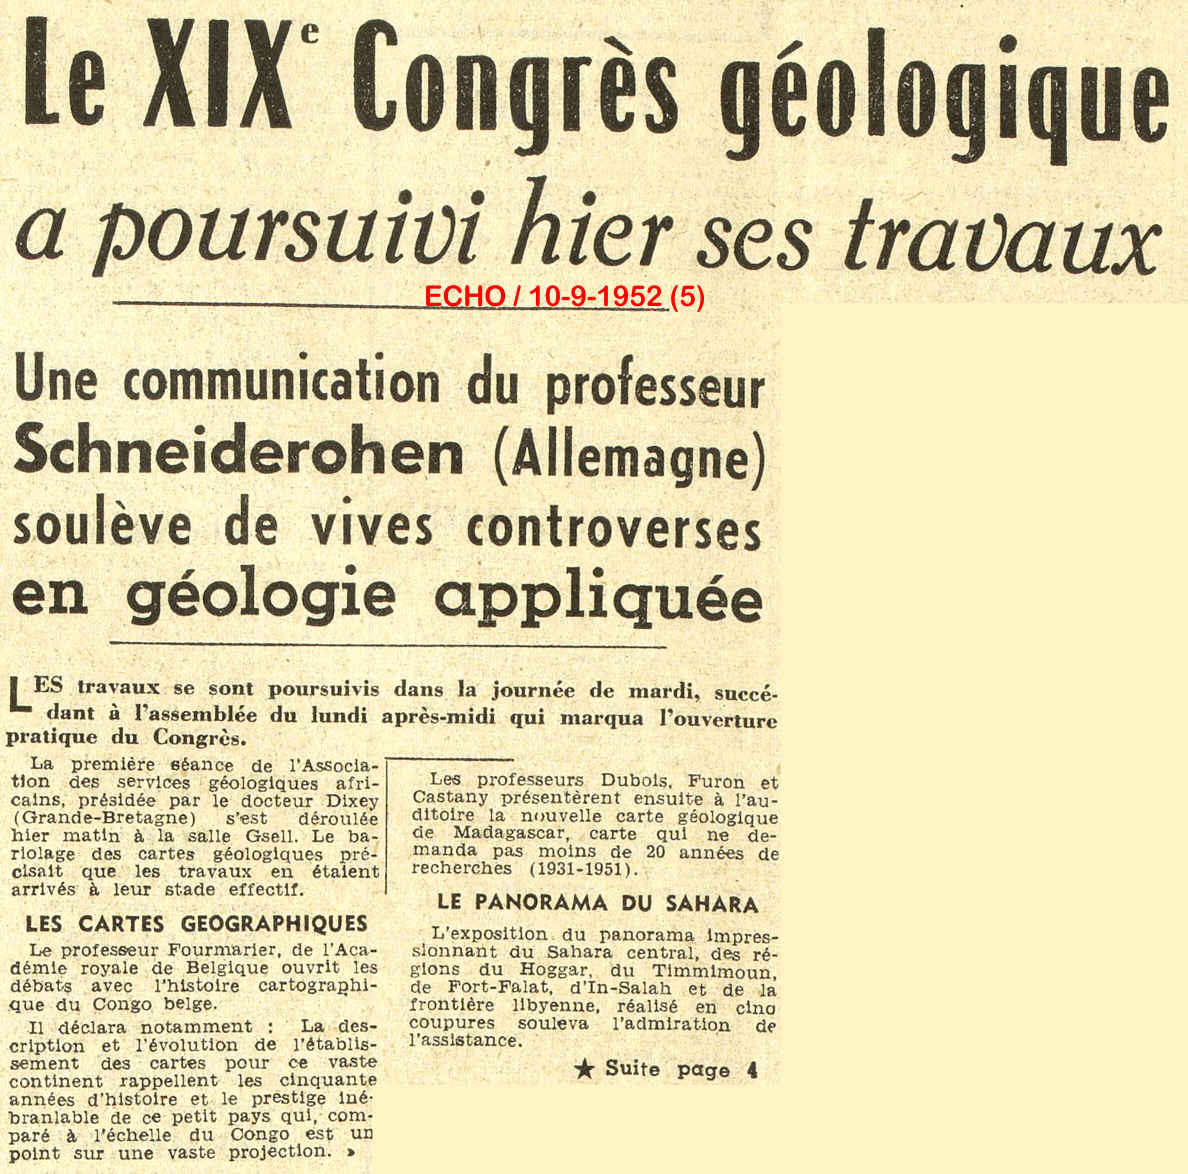 Le XIX° Congrès géologique a poursuivi hier ses travaux